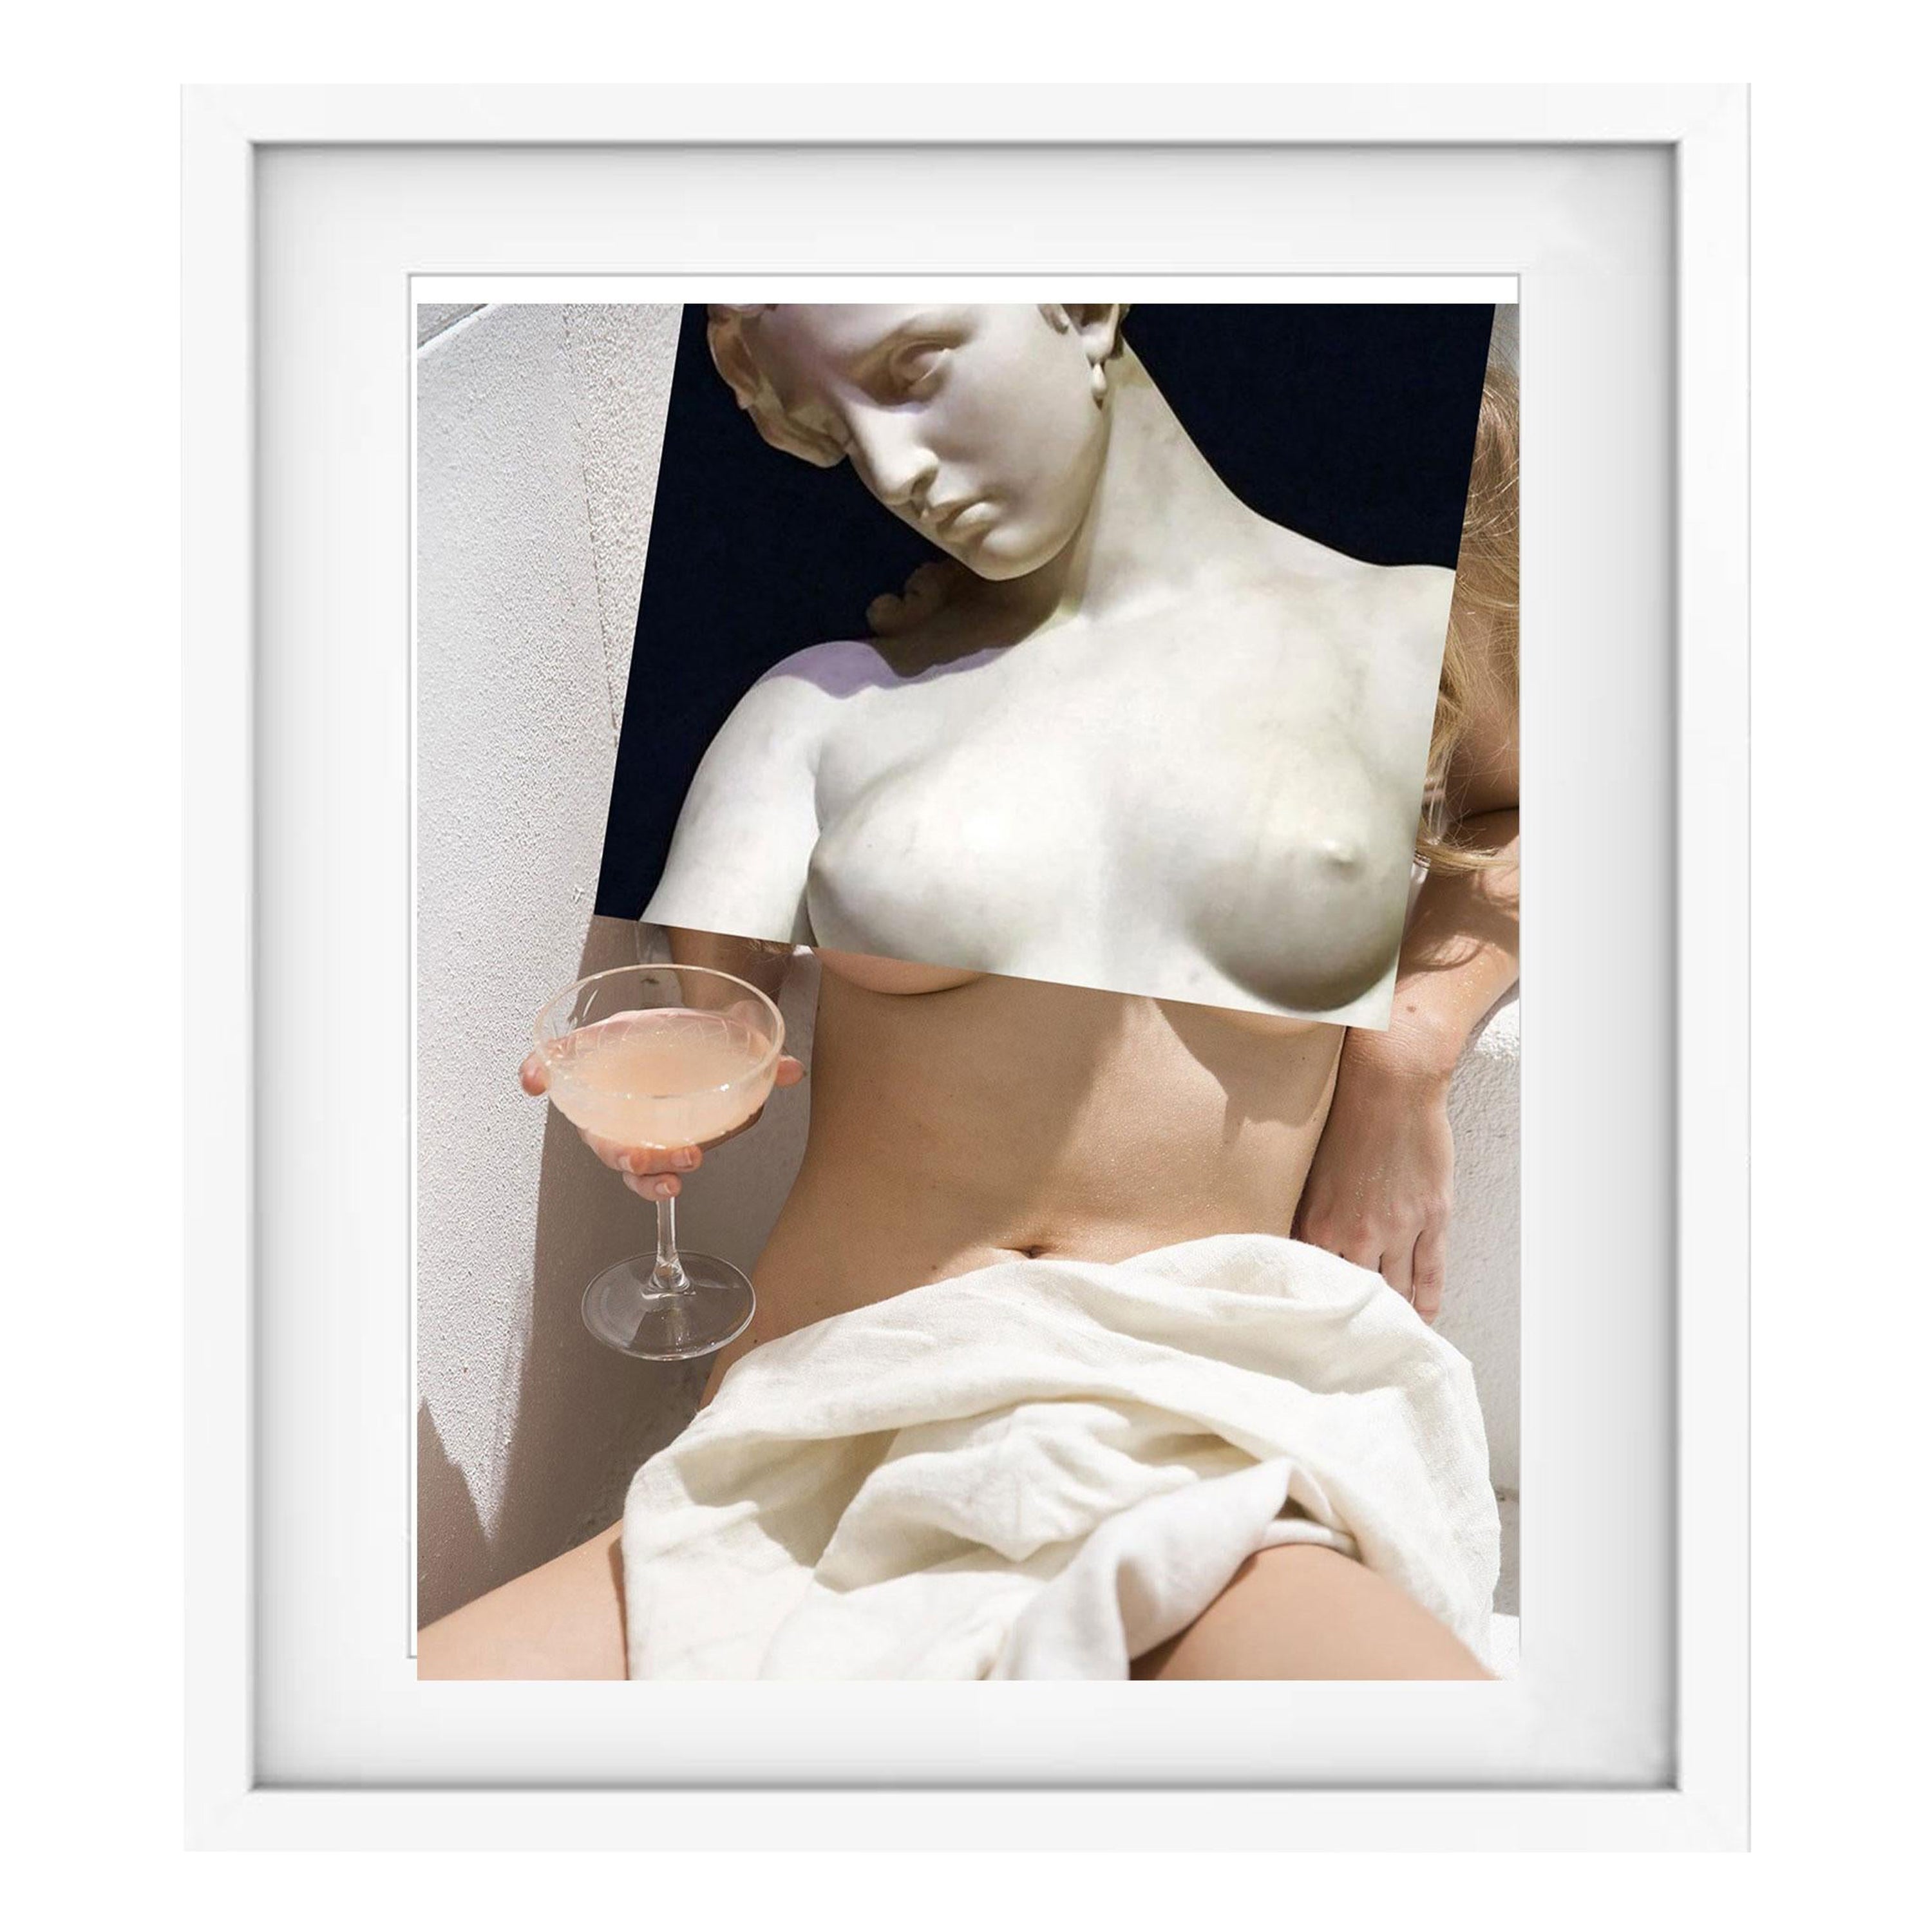 Klassische klassische Skulptur erotische Naro Pinosa, "Untitled"" Digitale Collage, Spanien, 2019